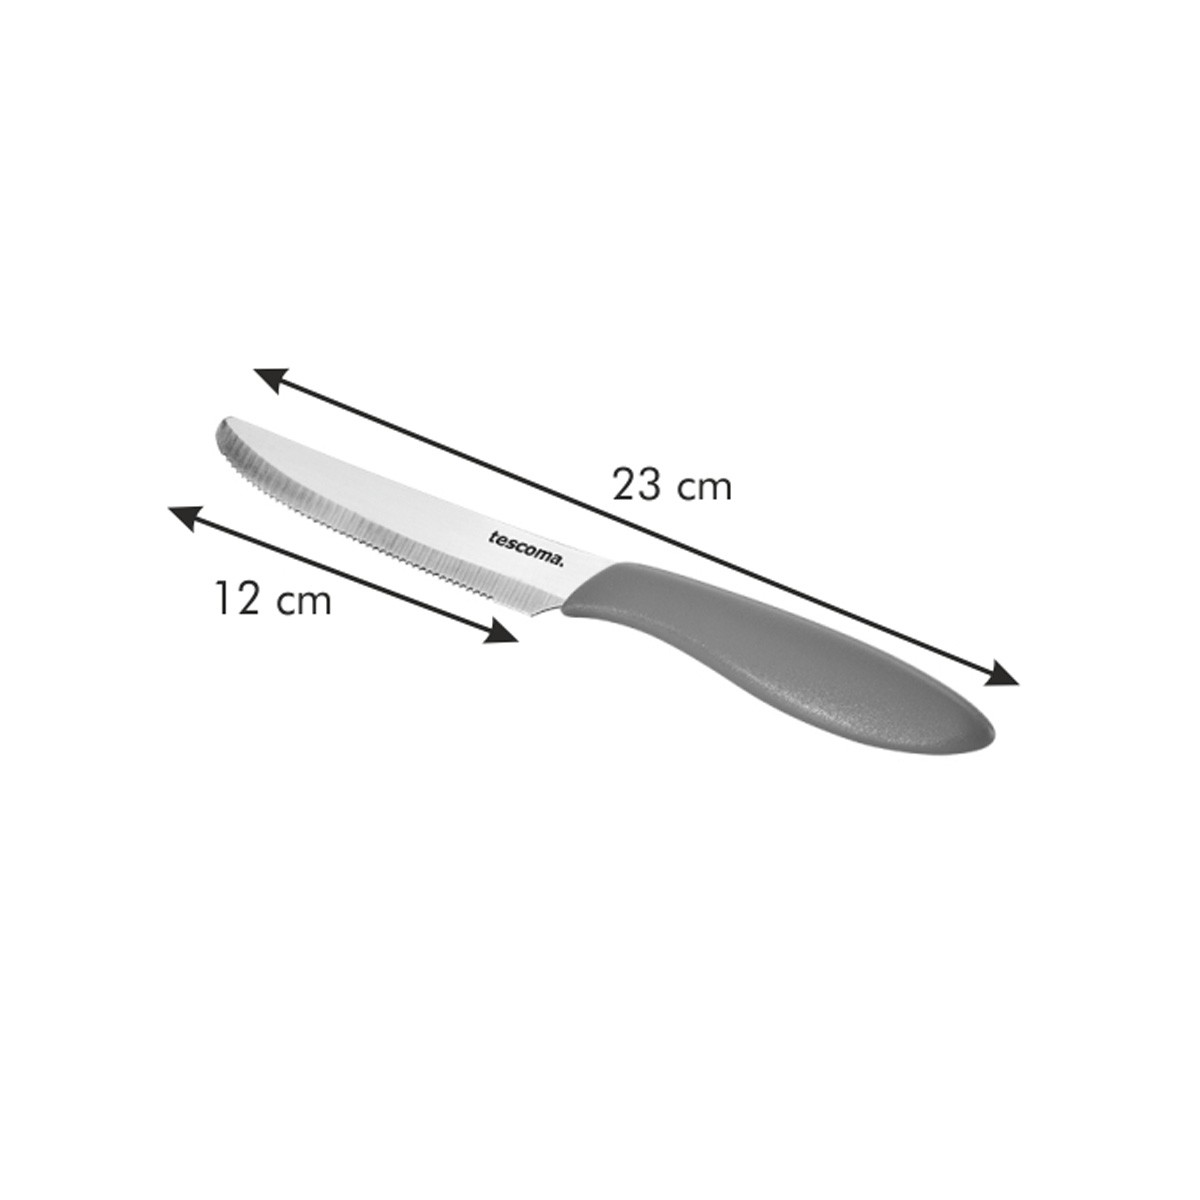 Nůž jídelní PRESTO 12 cm, 6 ks, červená